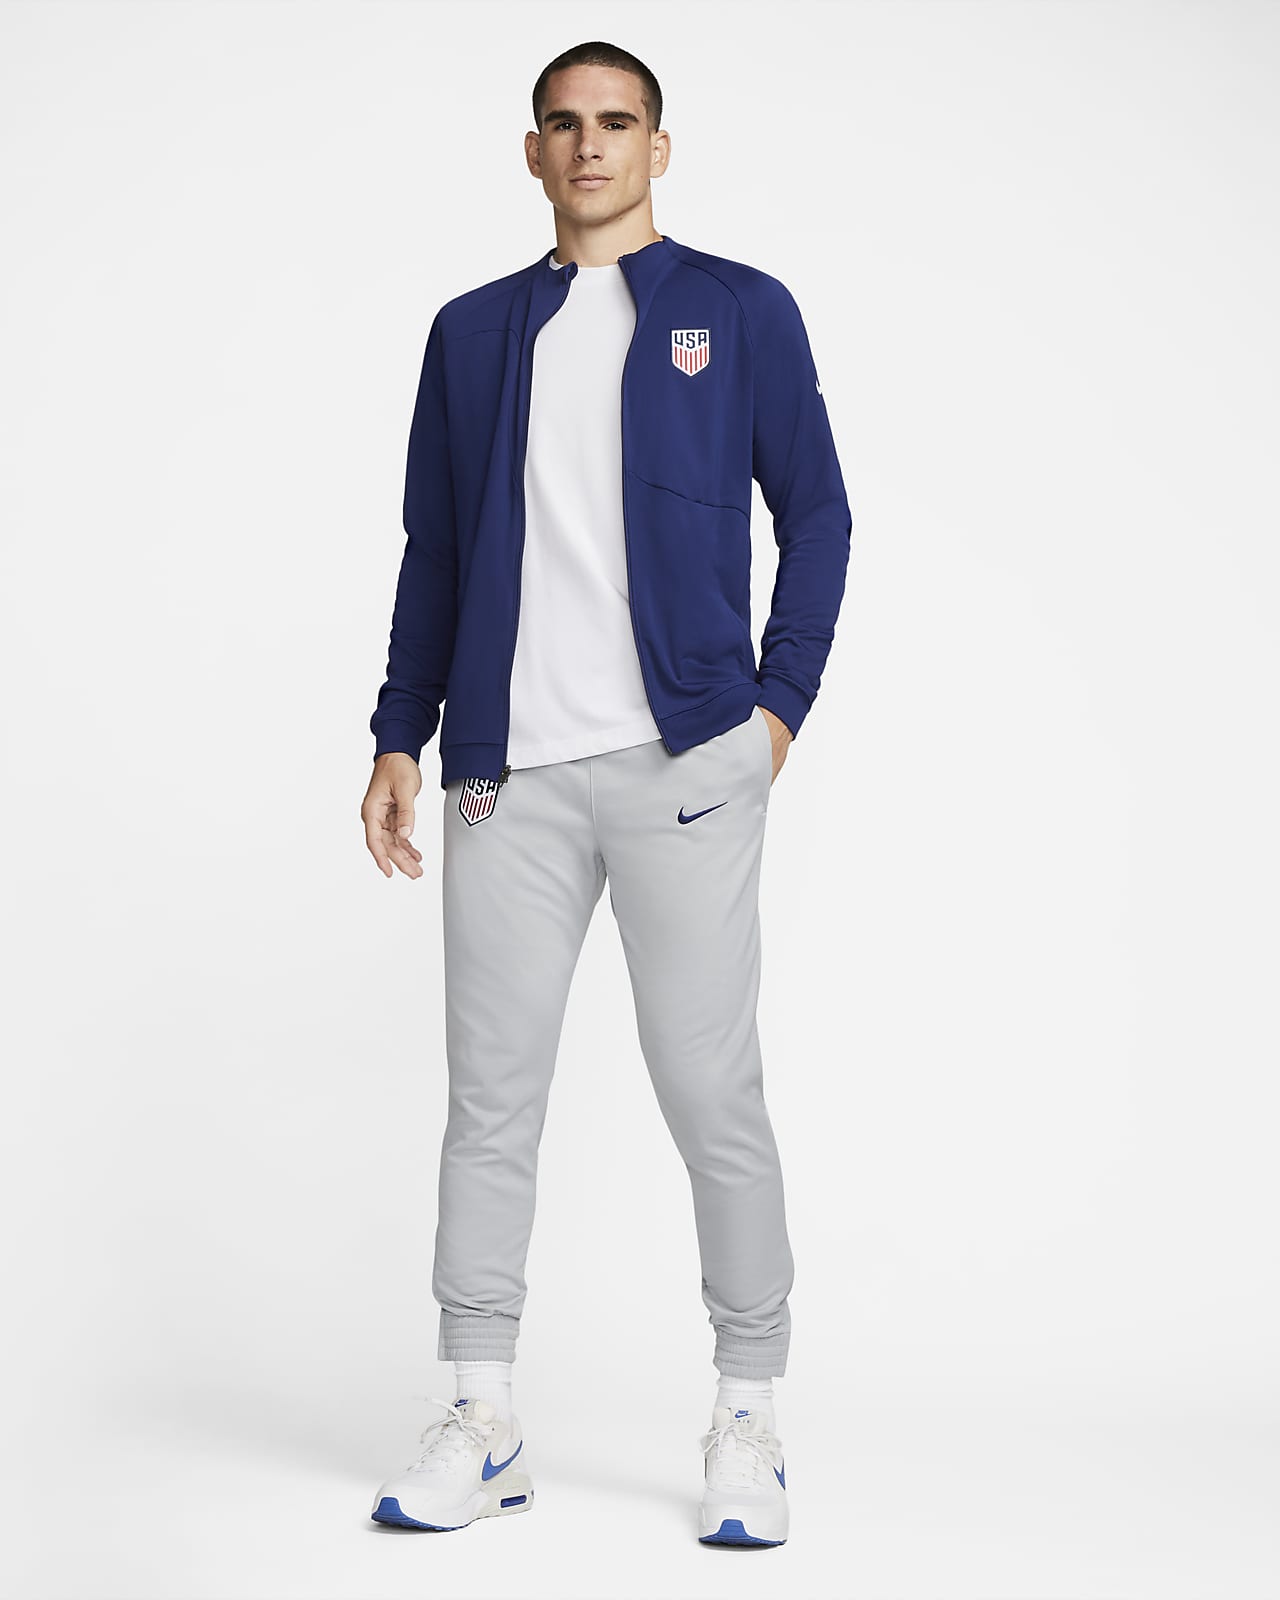 Perfect handelaar Verdampen U.S. Men's Knit Soccer Pants. Nike.com